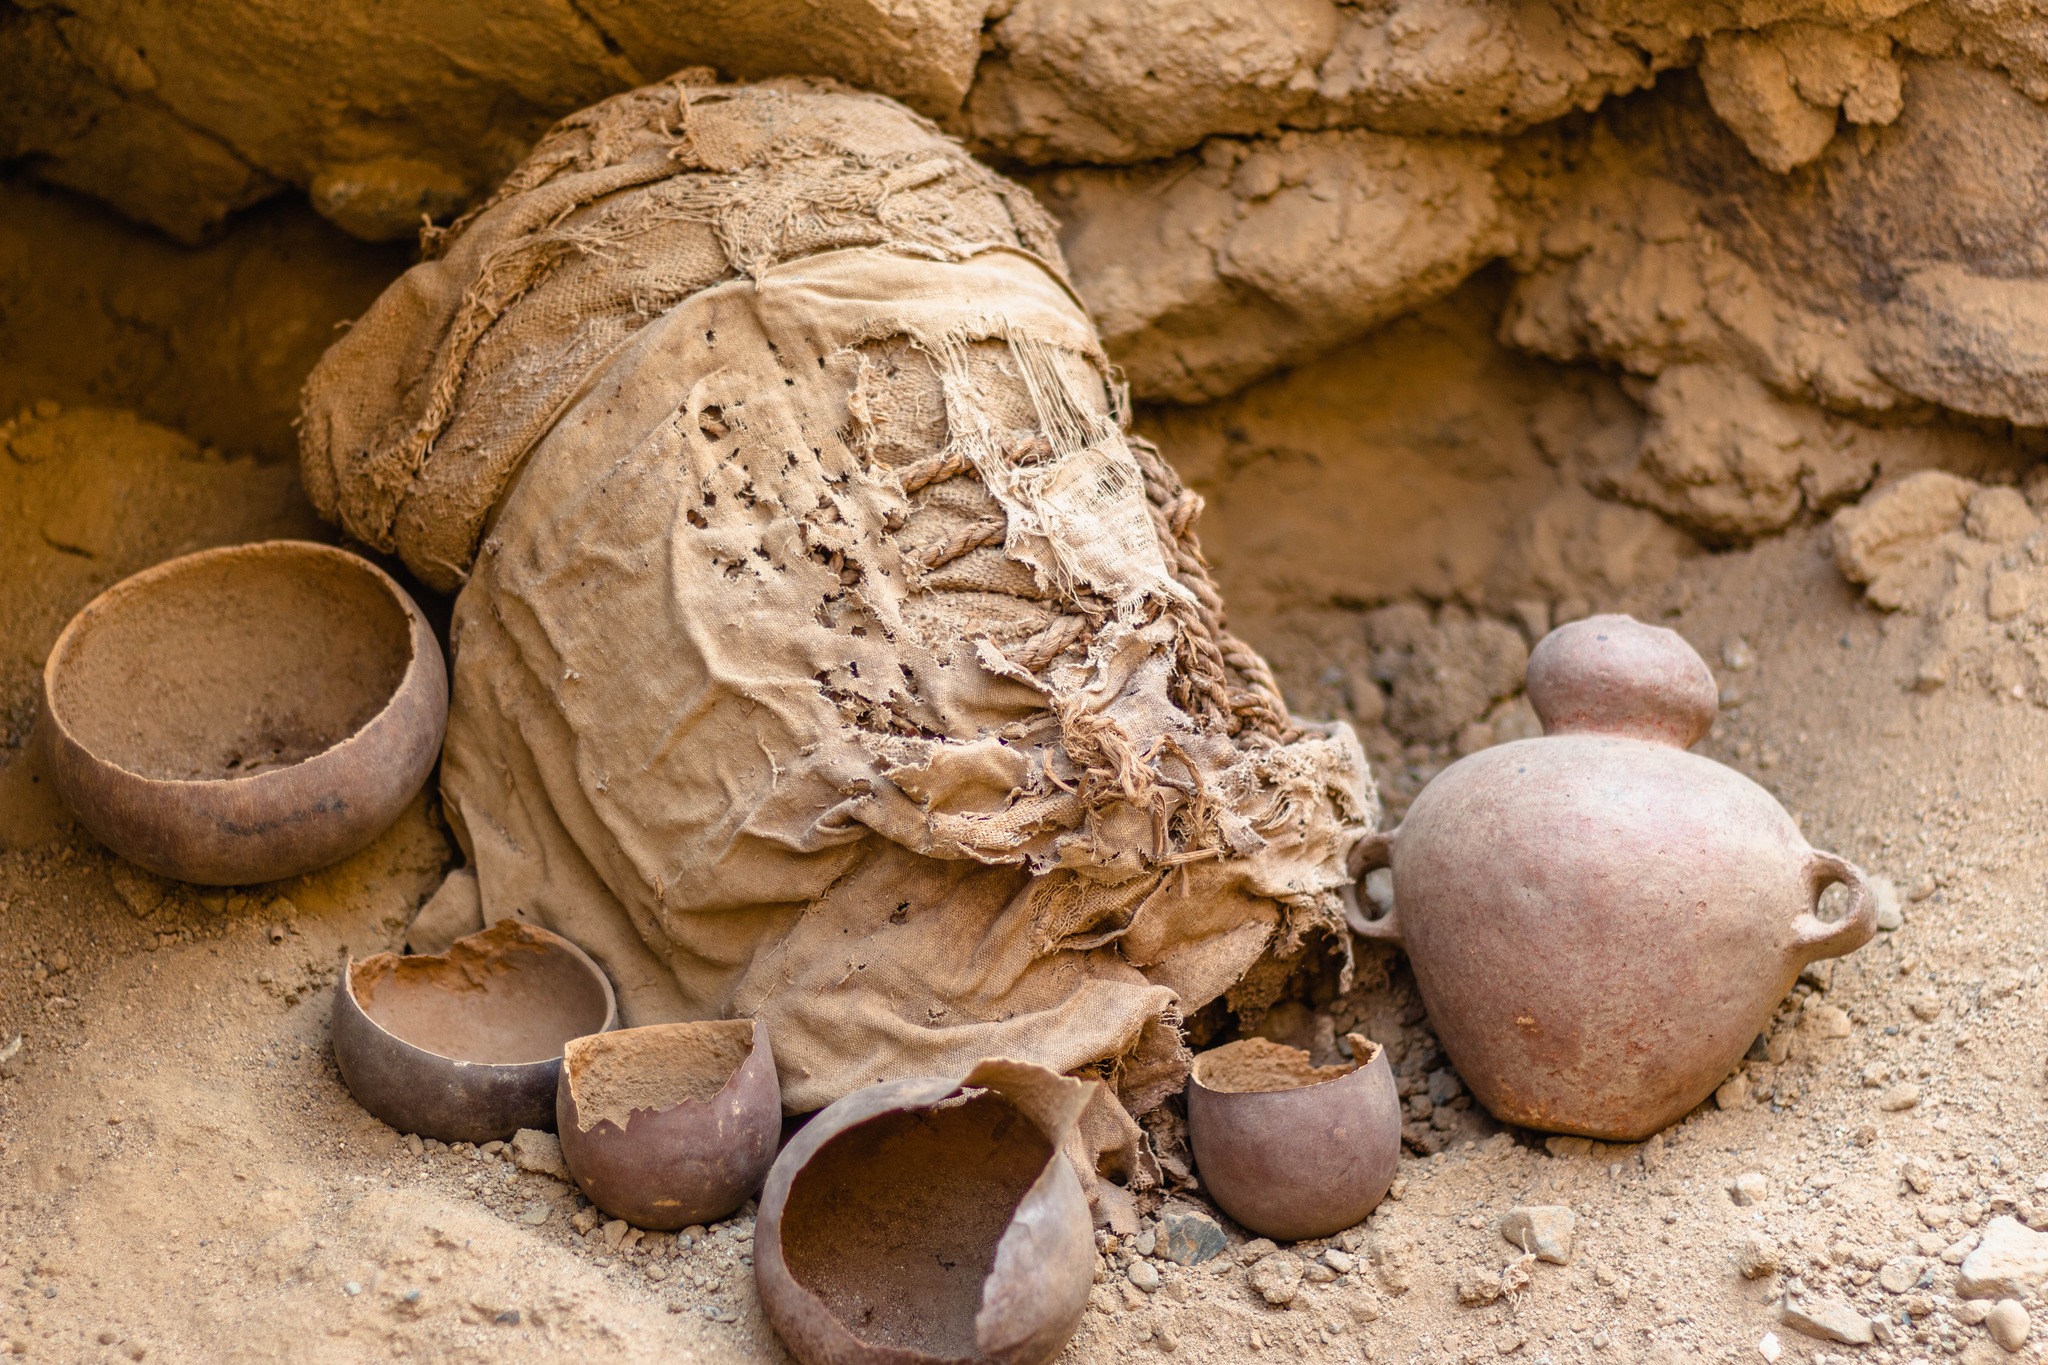 Oldest mass sacrifice of children found in Peru